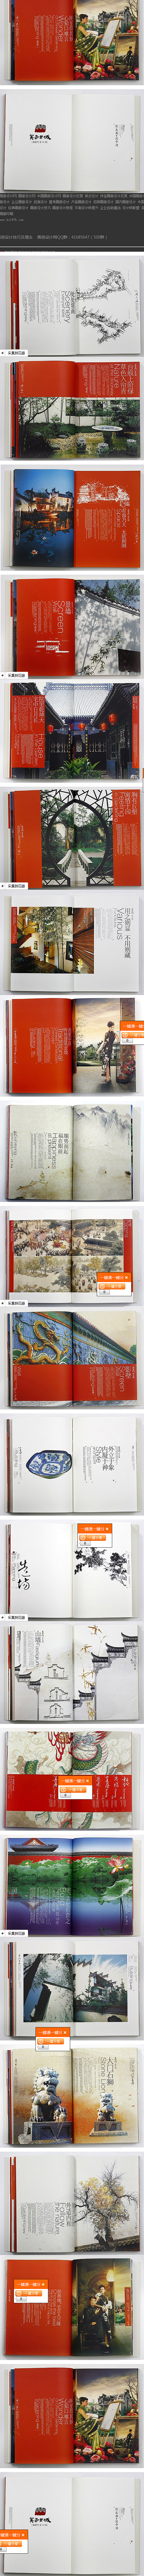 中国风画册设计网 简约中国风画册设计 水...